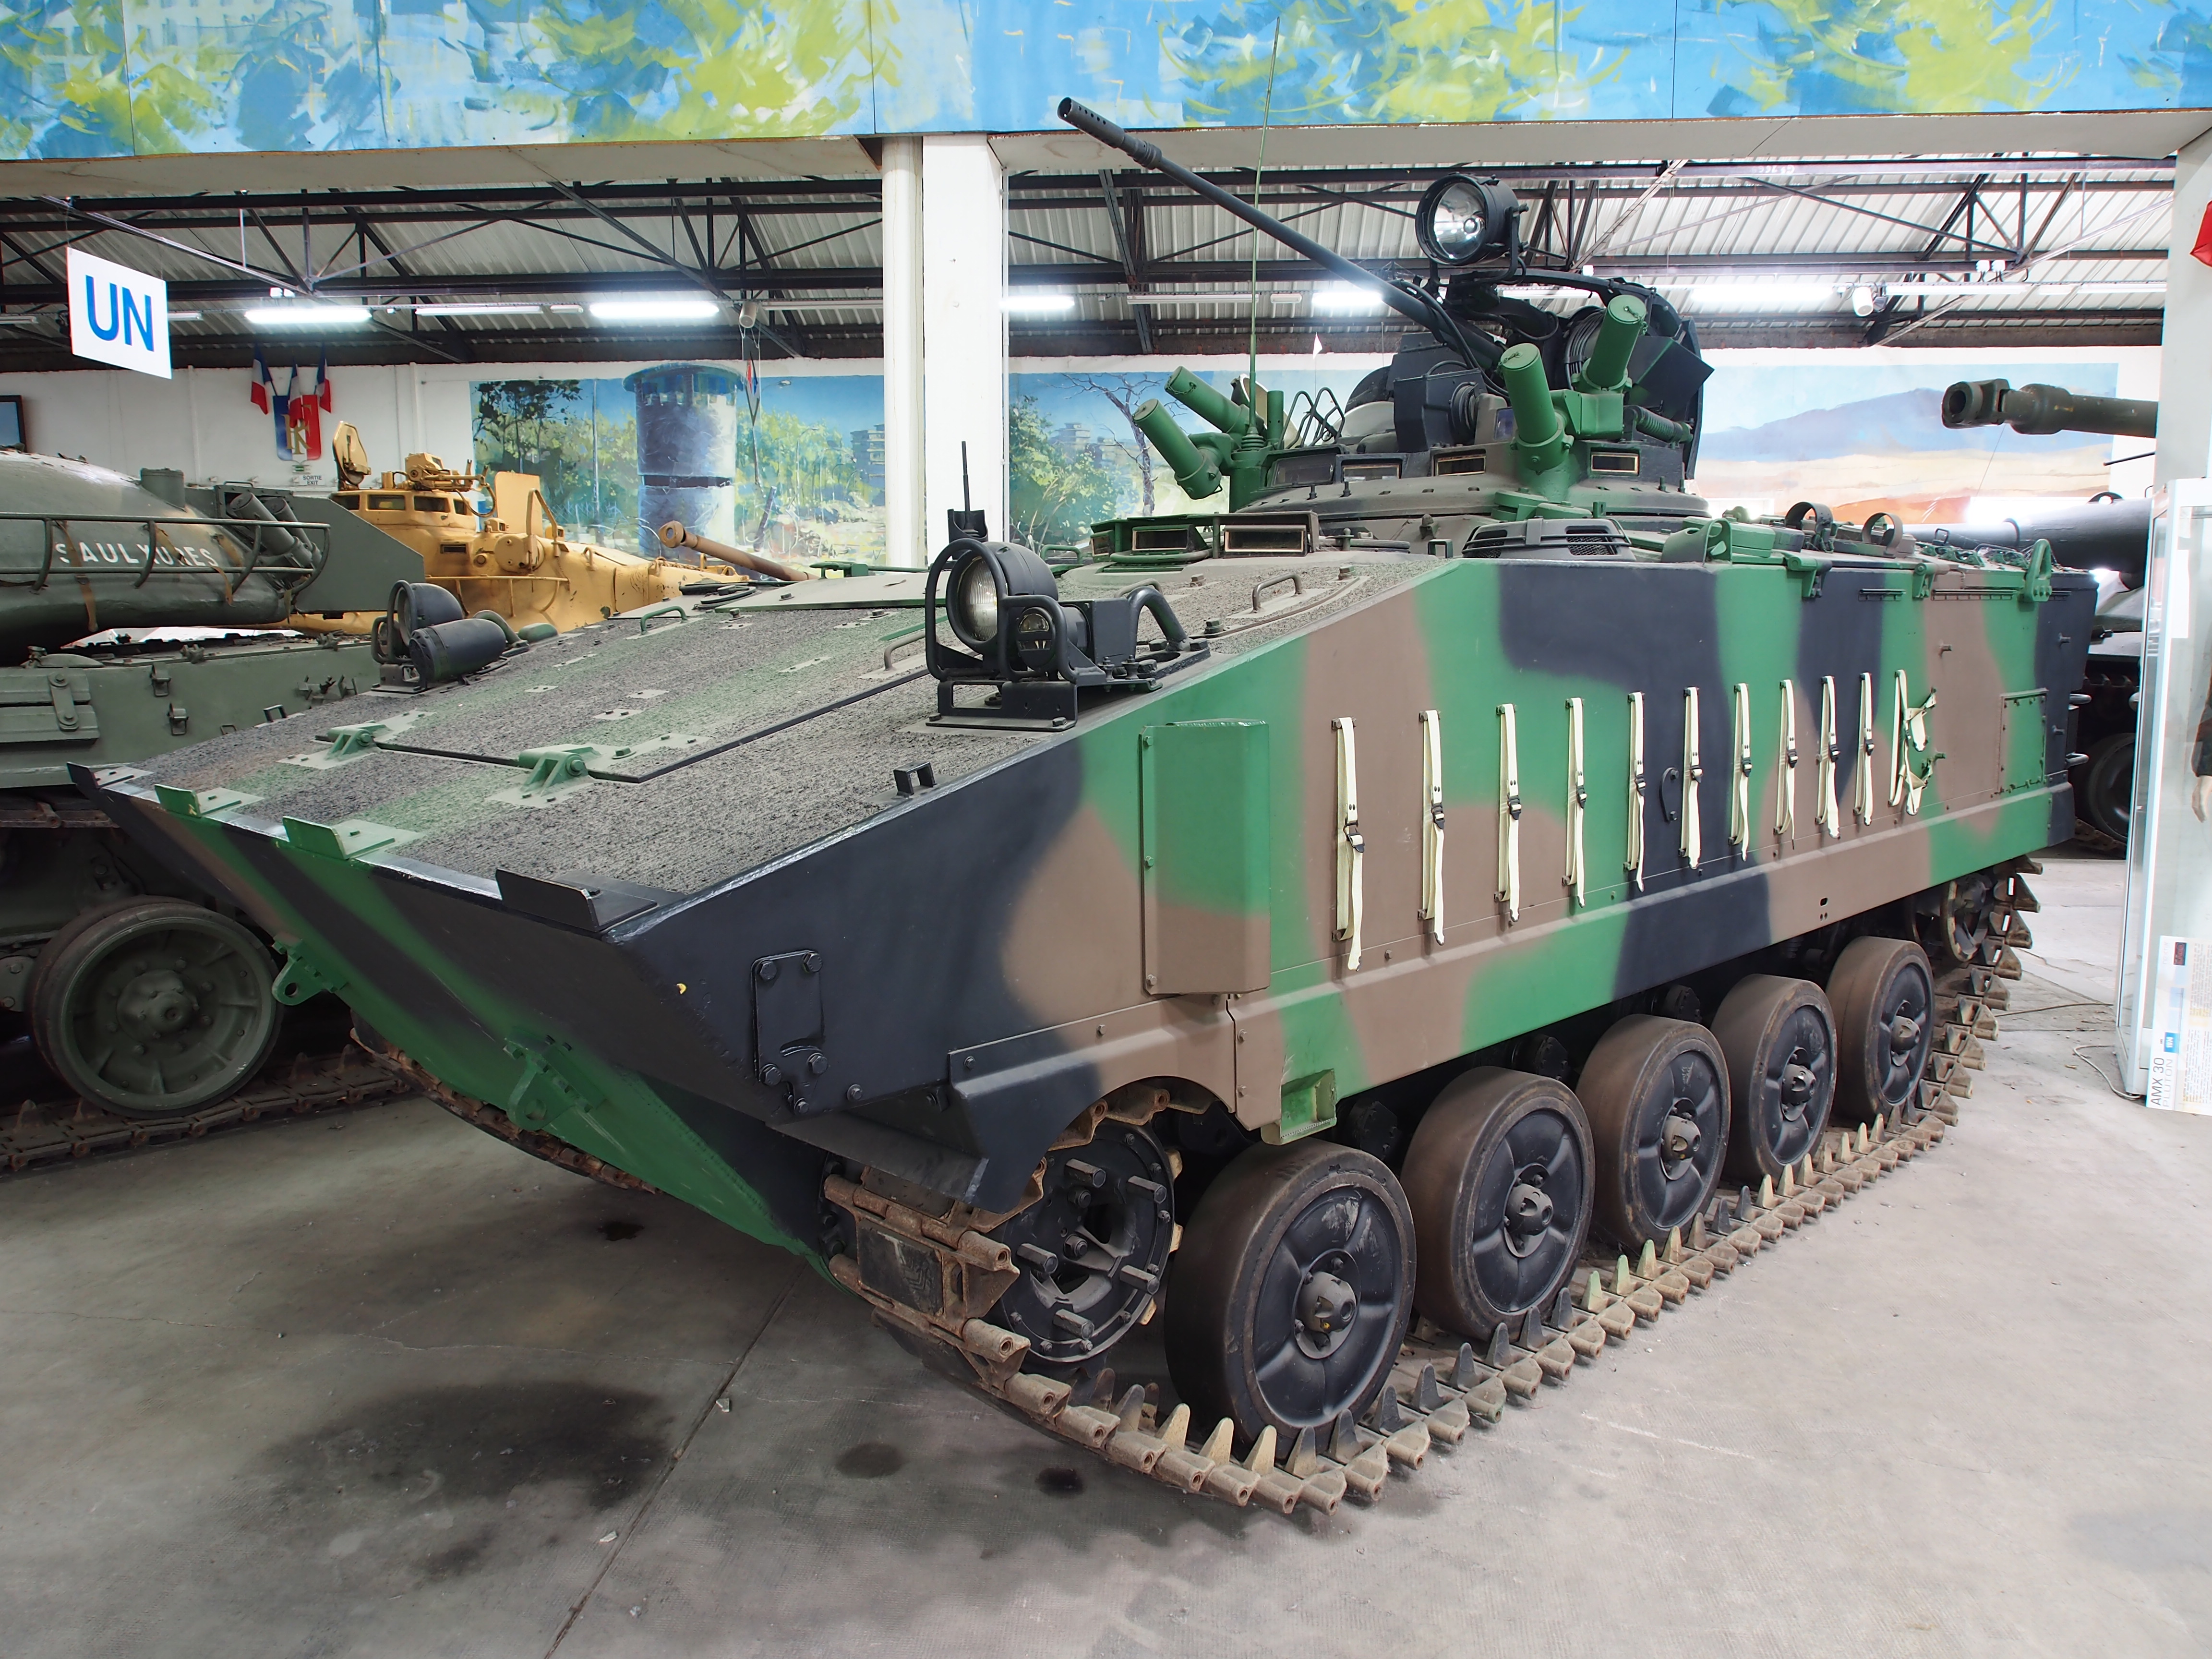 AMX-30 - Wikipedia